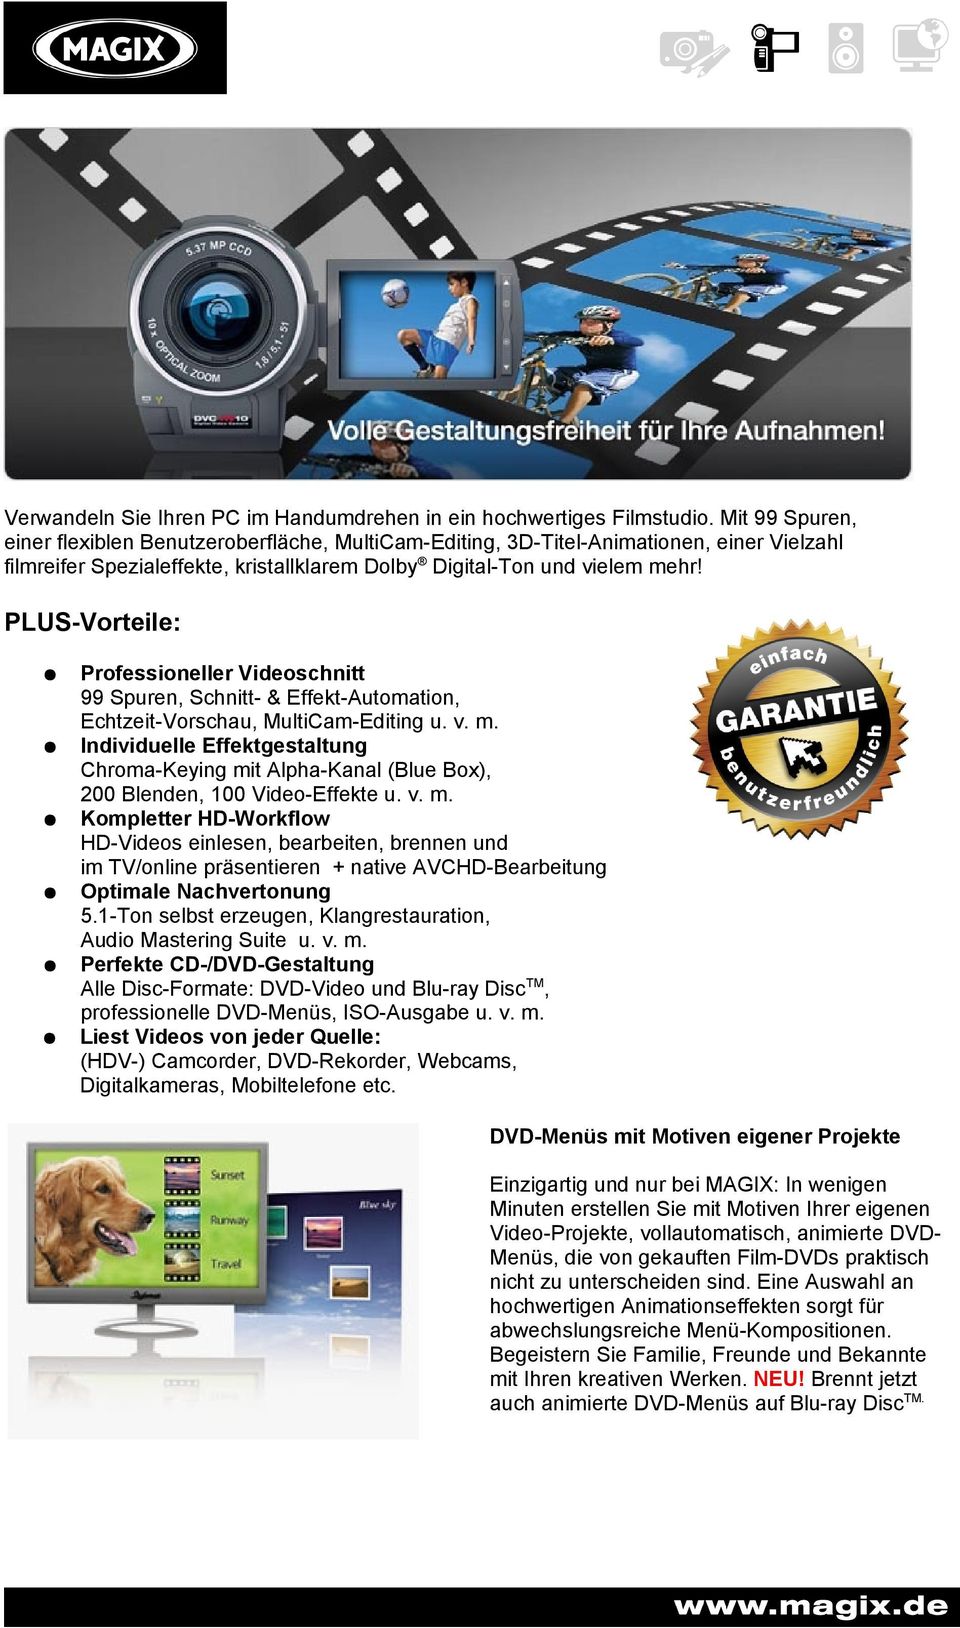 PLUS-Vorteile: Professioneller Videoschnitt 99 Spuren, Schnitt- & Effekt-Automation, Echtzeit-Vorschau, MultiCam-Editing u. v. m.